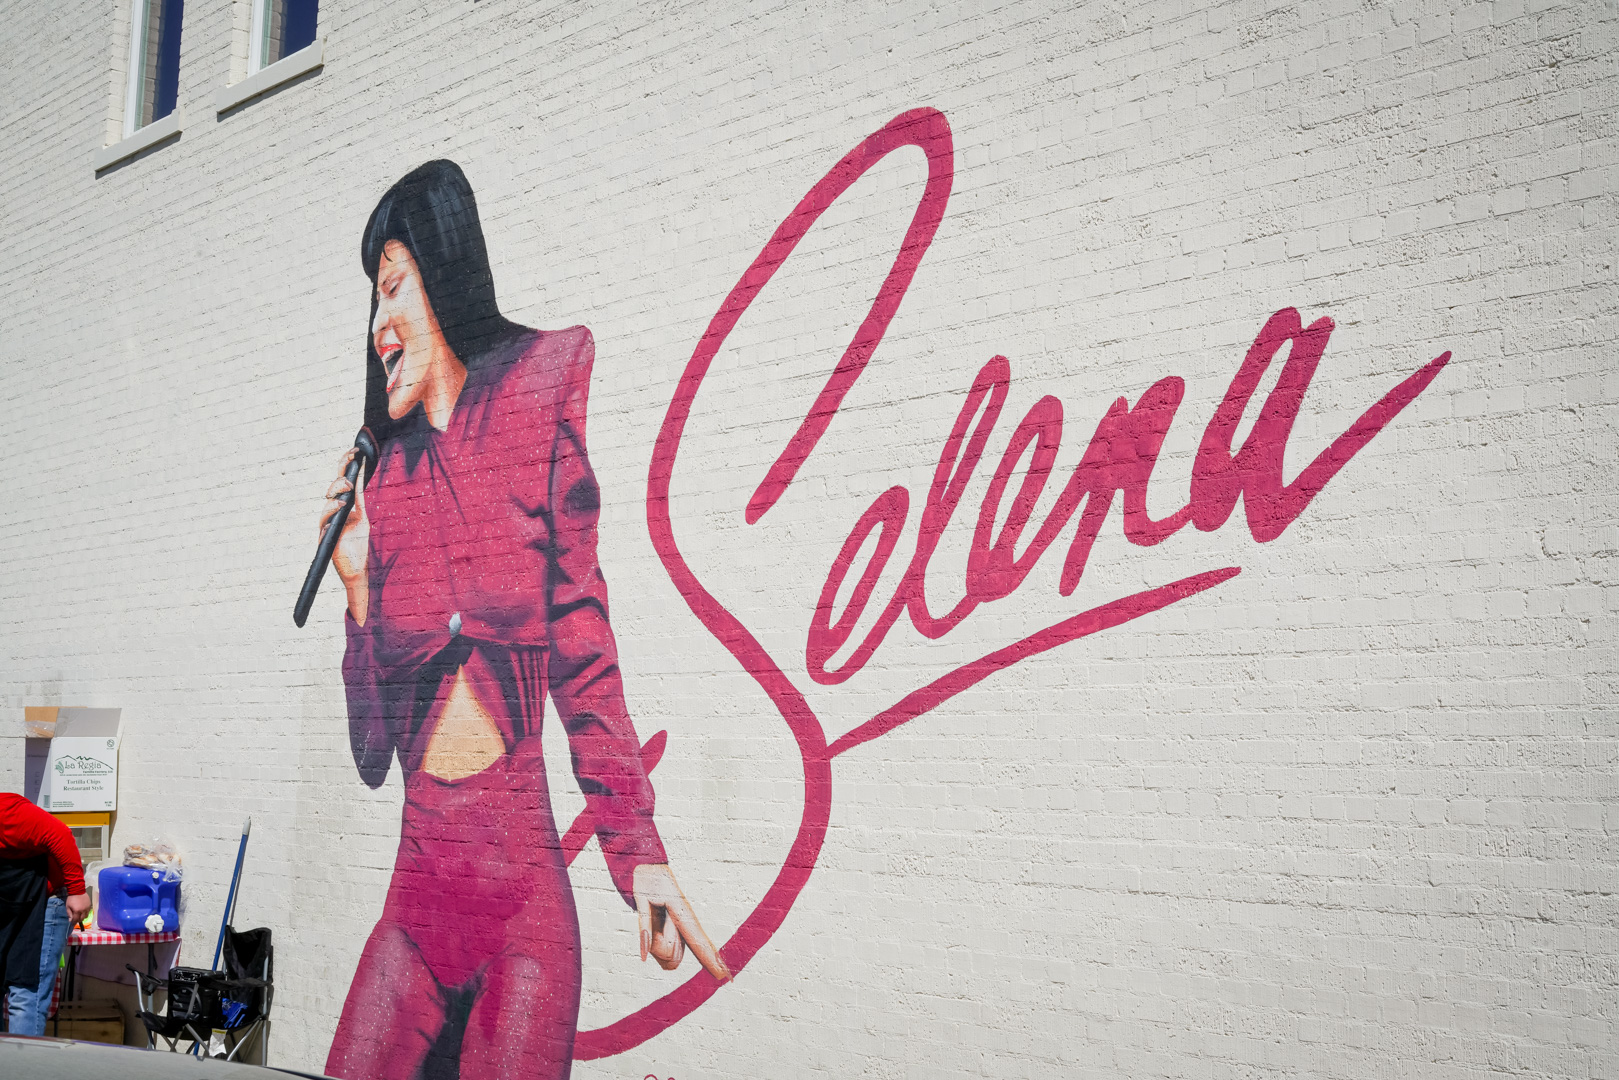 A pink mural of Selena